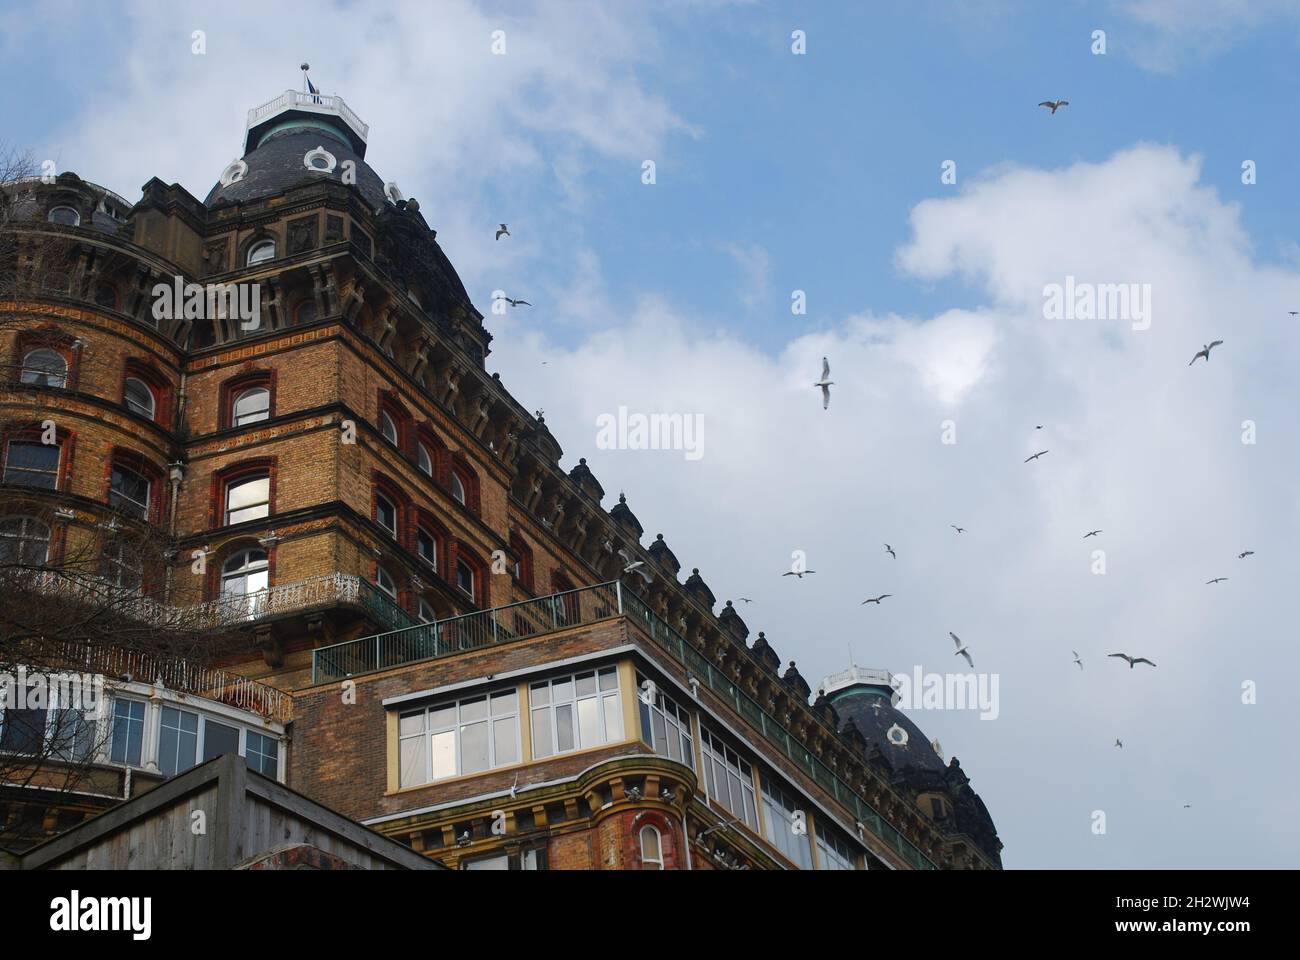 Blick auf das Grand Hotel in Scarborough, mit Vögeln, die am Himmel Rollen Stockfoto